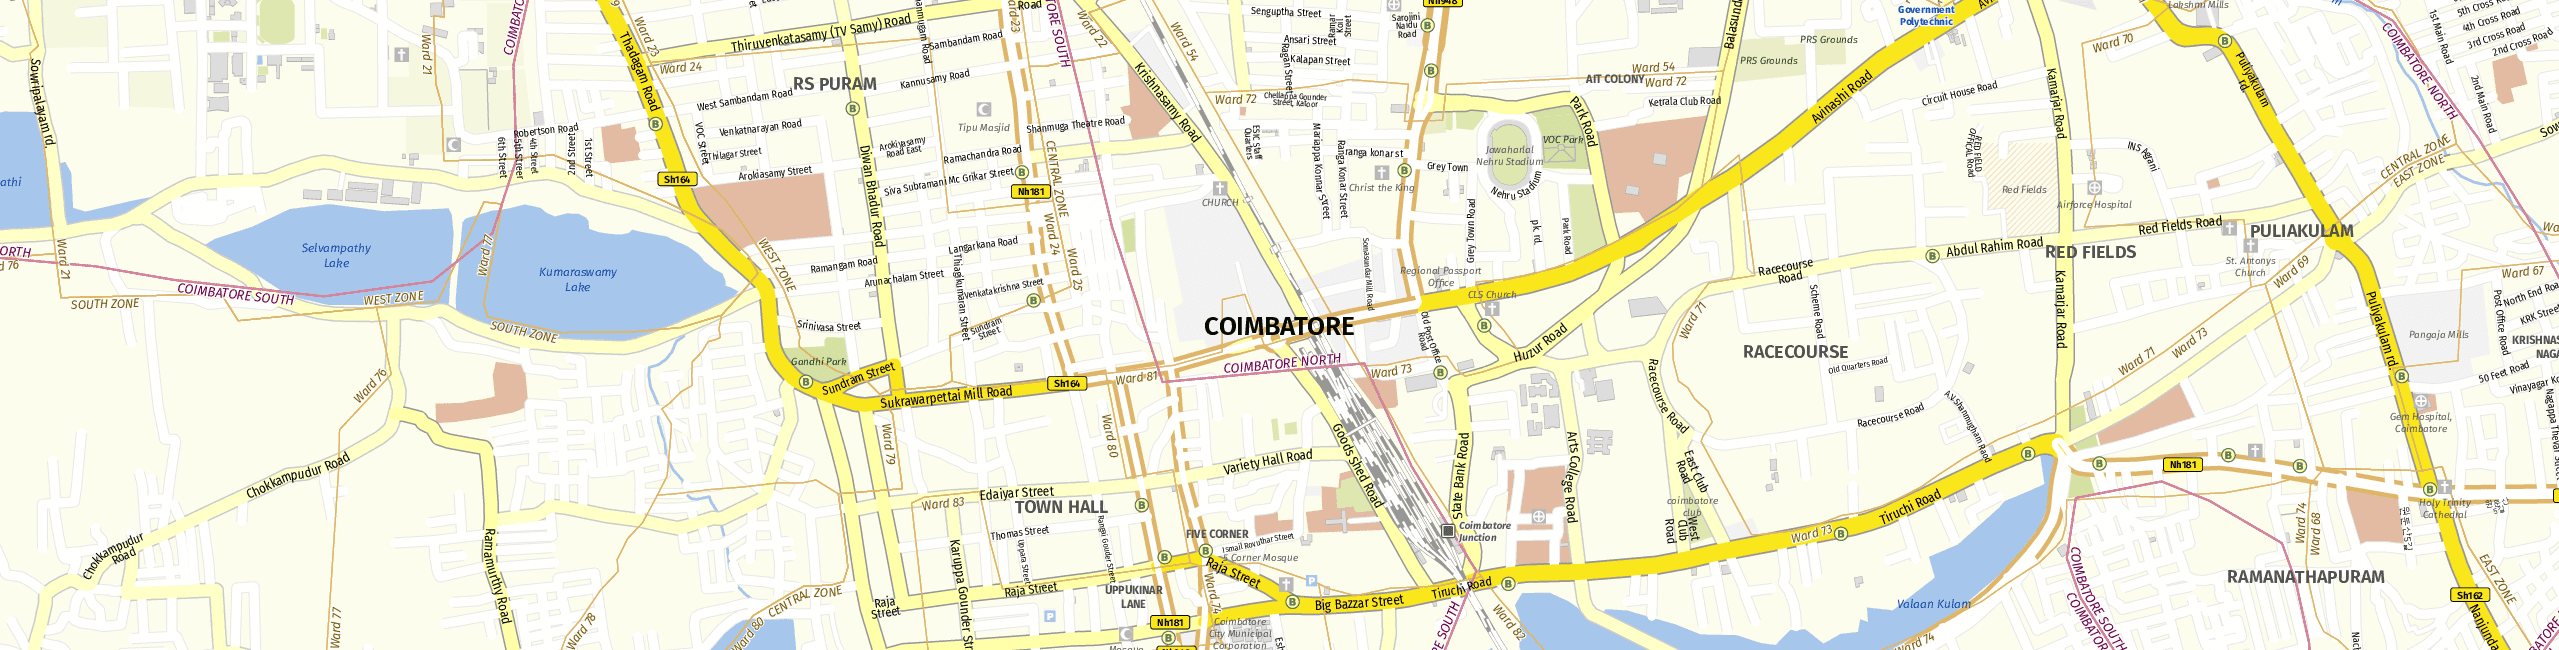 Stadtplan Coimbatore zum Downloaden.